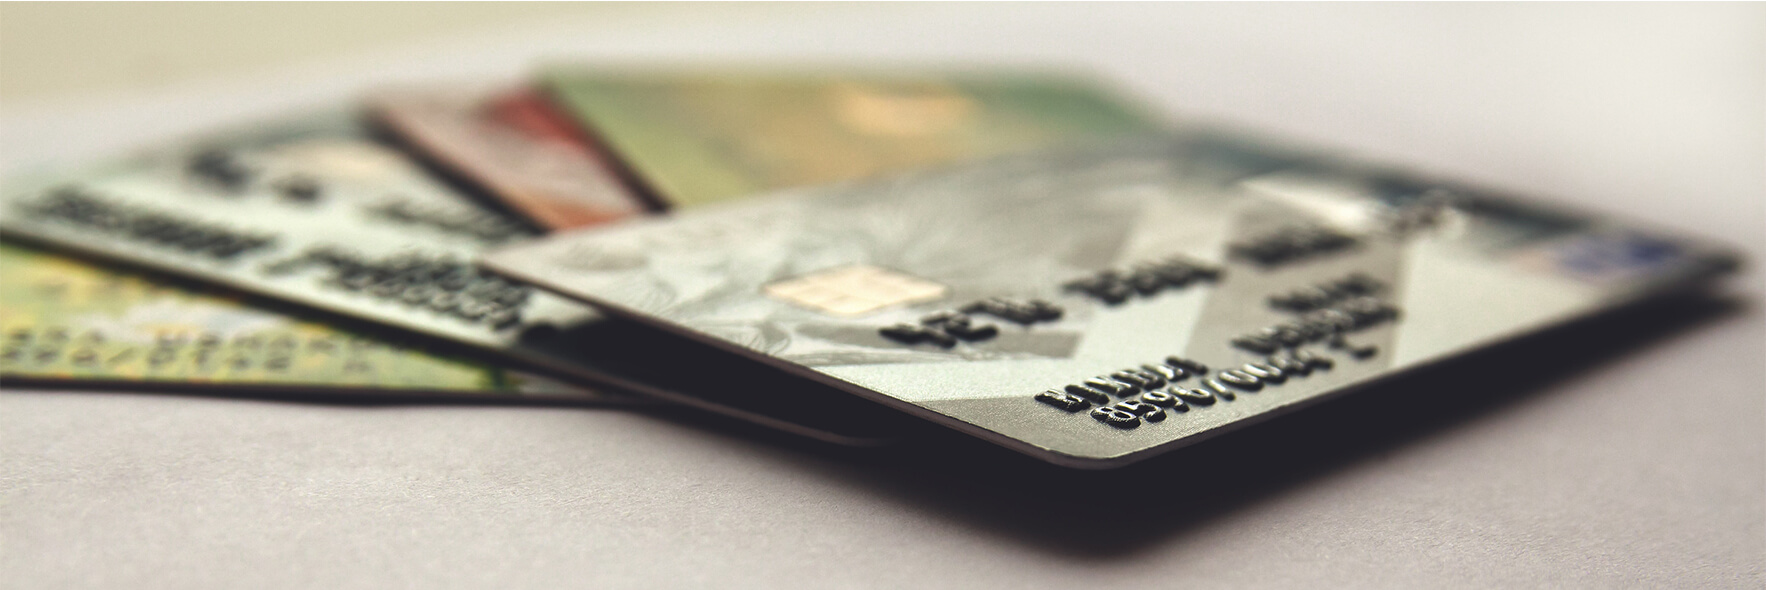 Bei OTTO per Kreditkarte bezahlen - So geht's! Schritt-für-Schritt